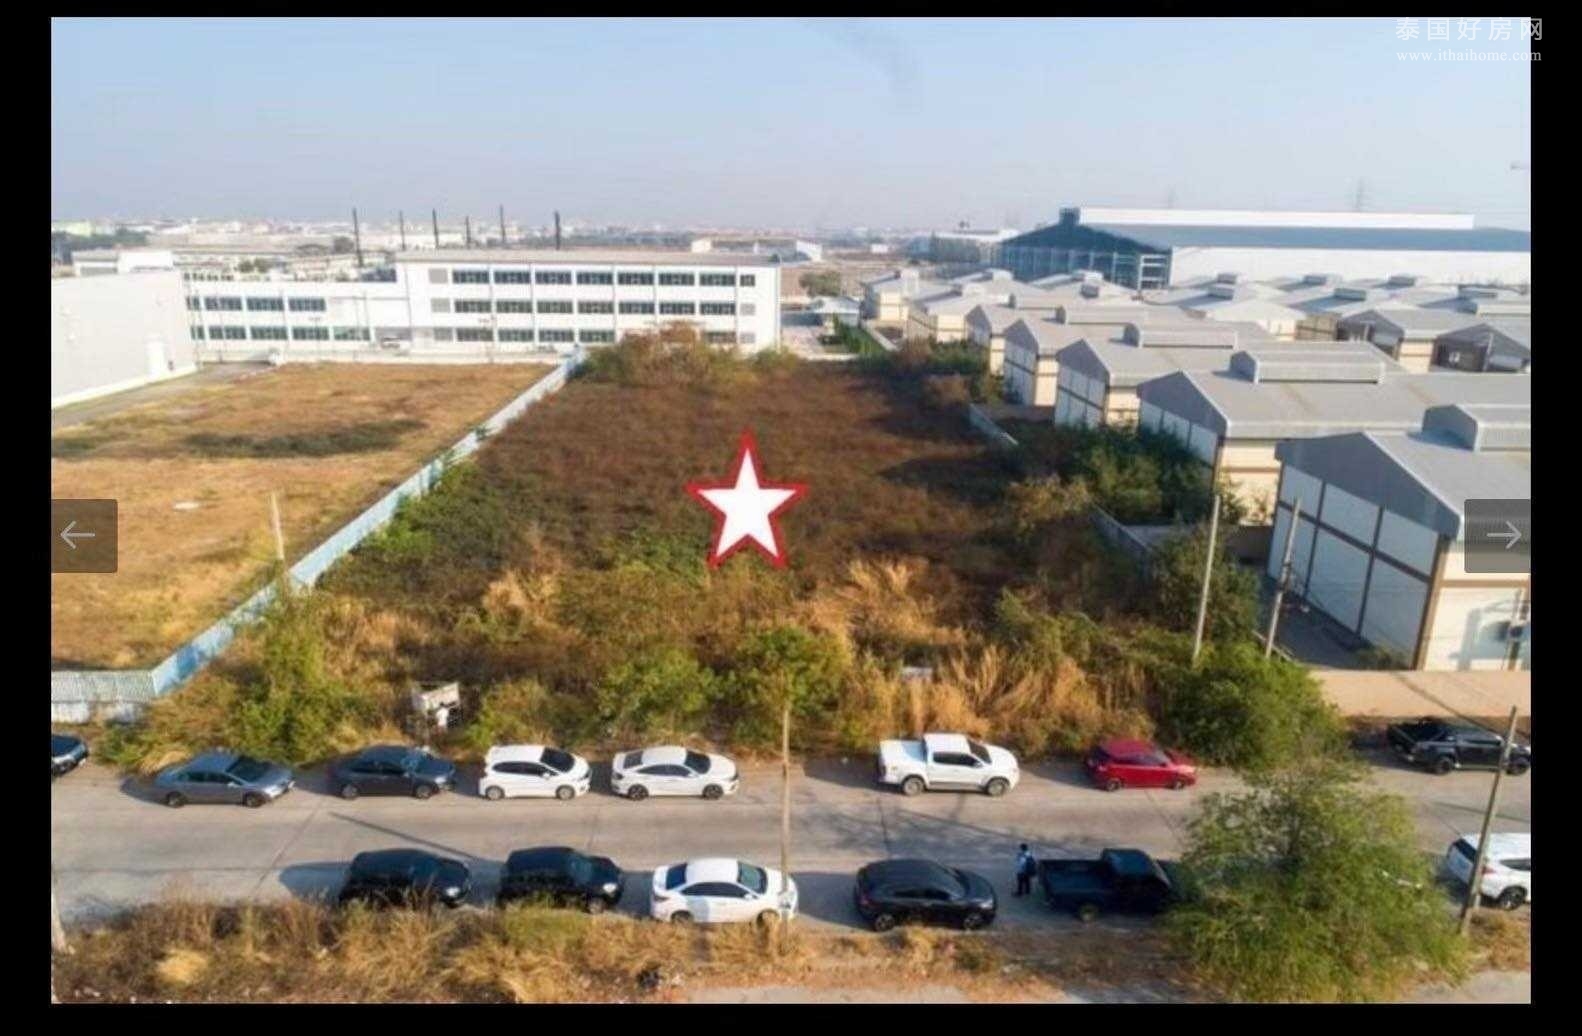 Navanakorn Industrial Estate 土地出售 4800平米 4186.56万泰铢